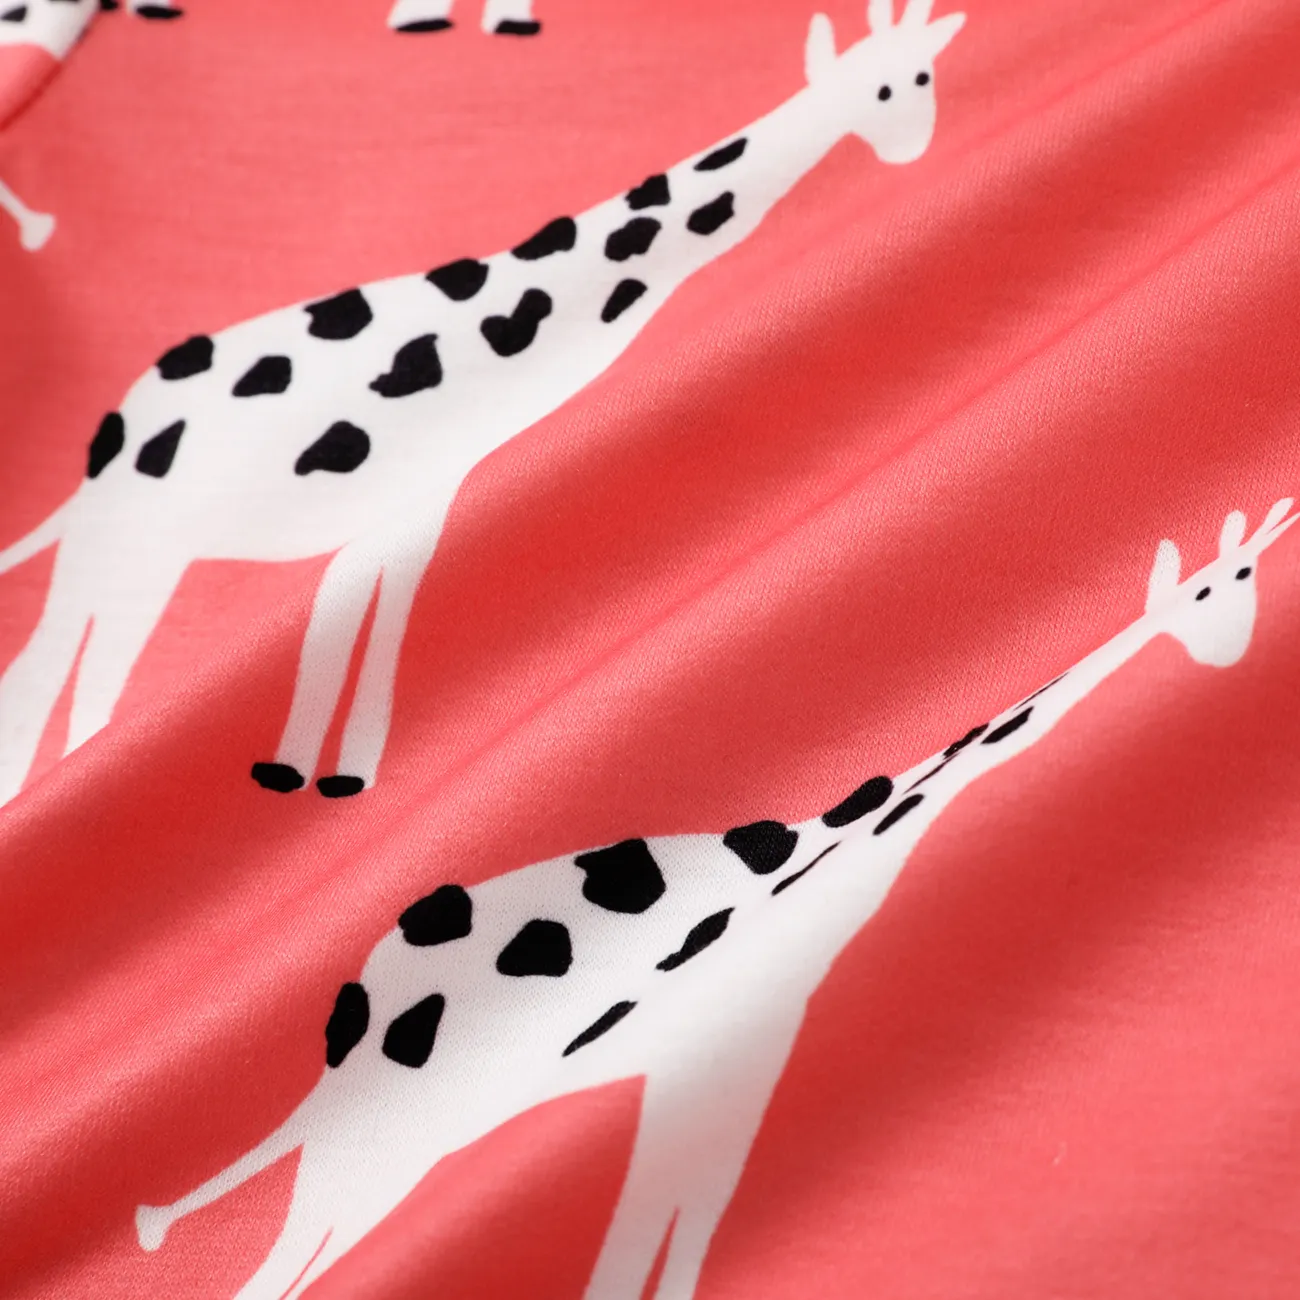 Baby Girl Turquoise/Pink All Over Animal Print Long-sleeve Sweatshirt Pink big image 1